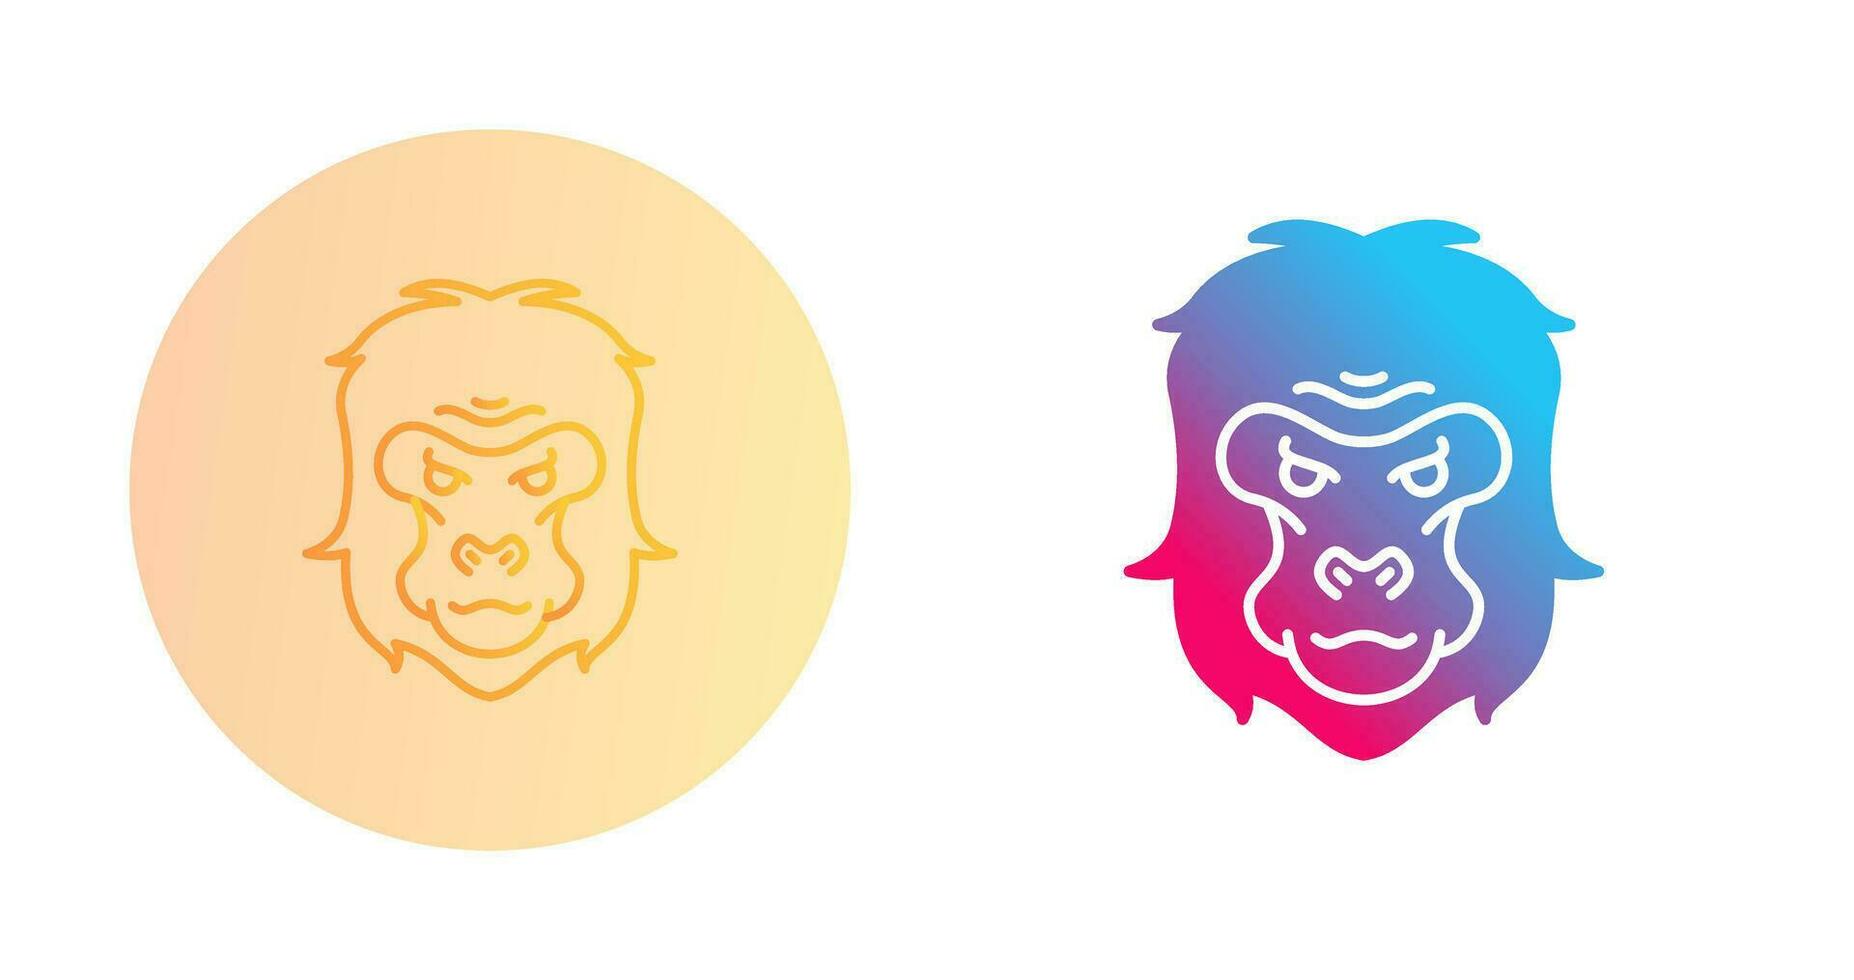 icône de vecteur de gorille